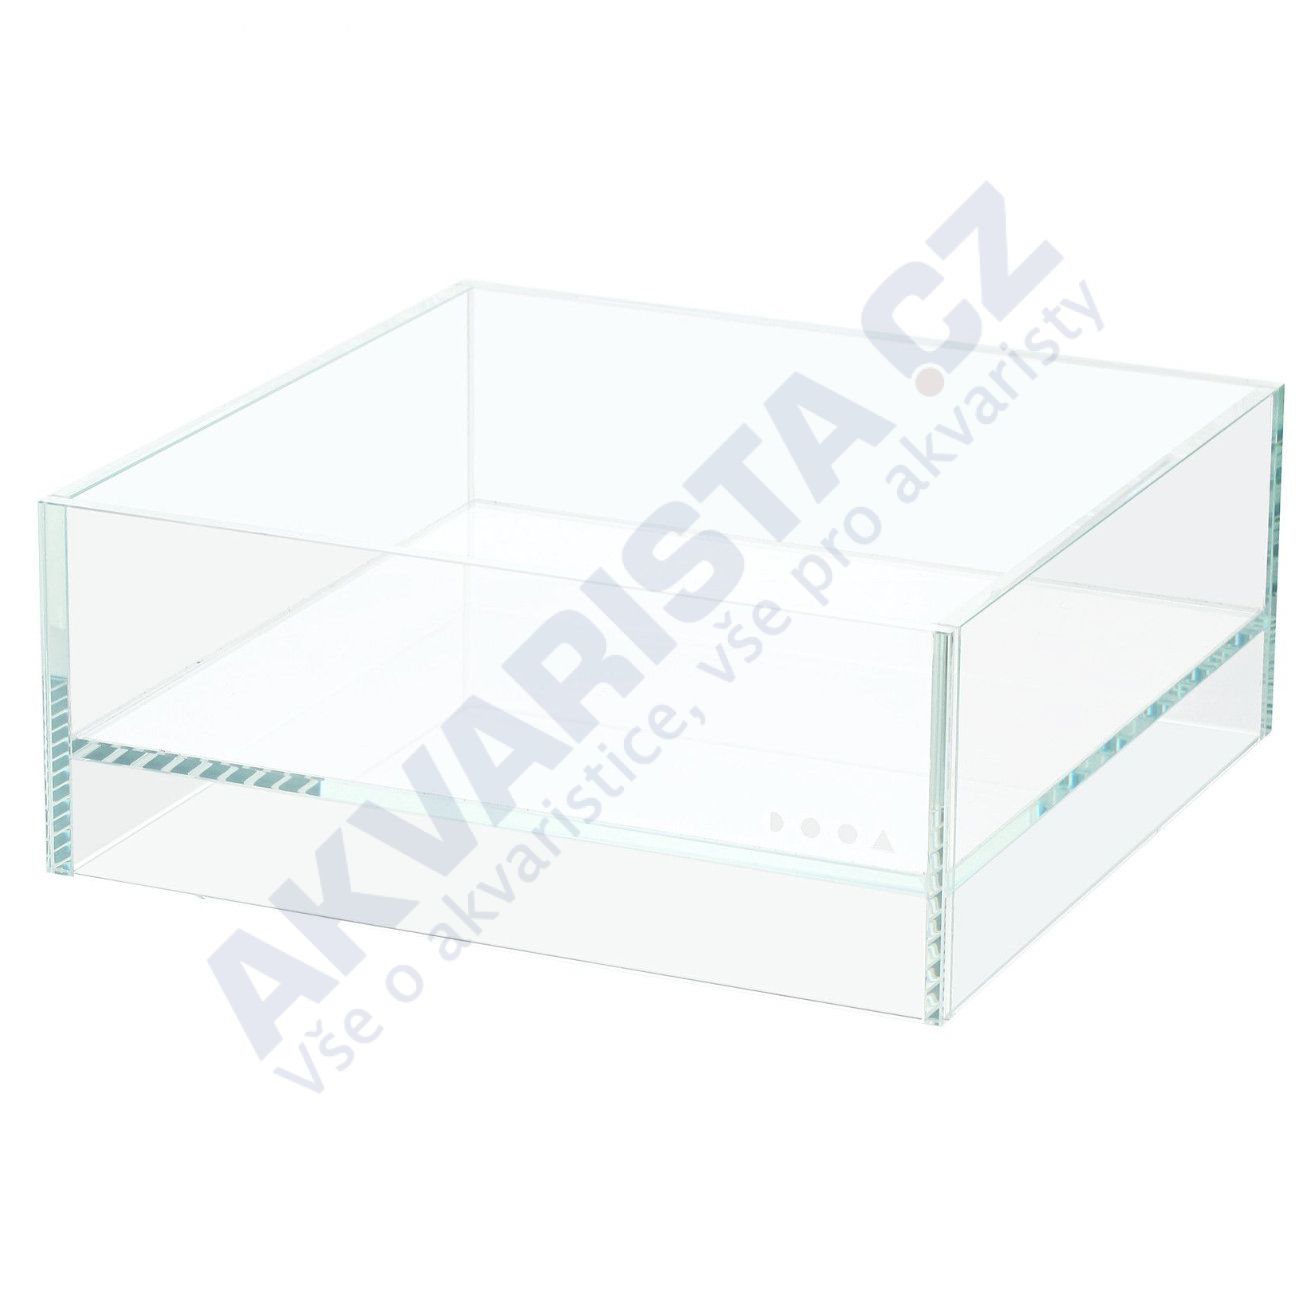 ADA DOOA Neo Glass AIR 20x20x8 cm